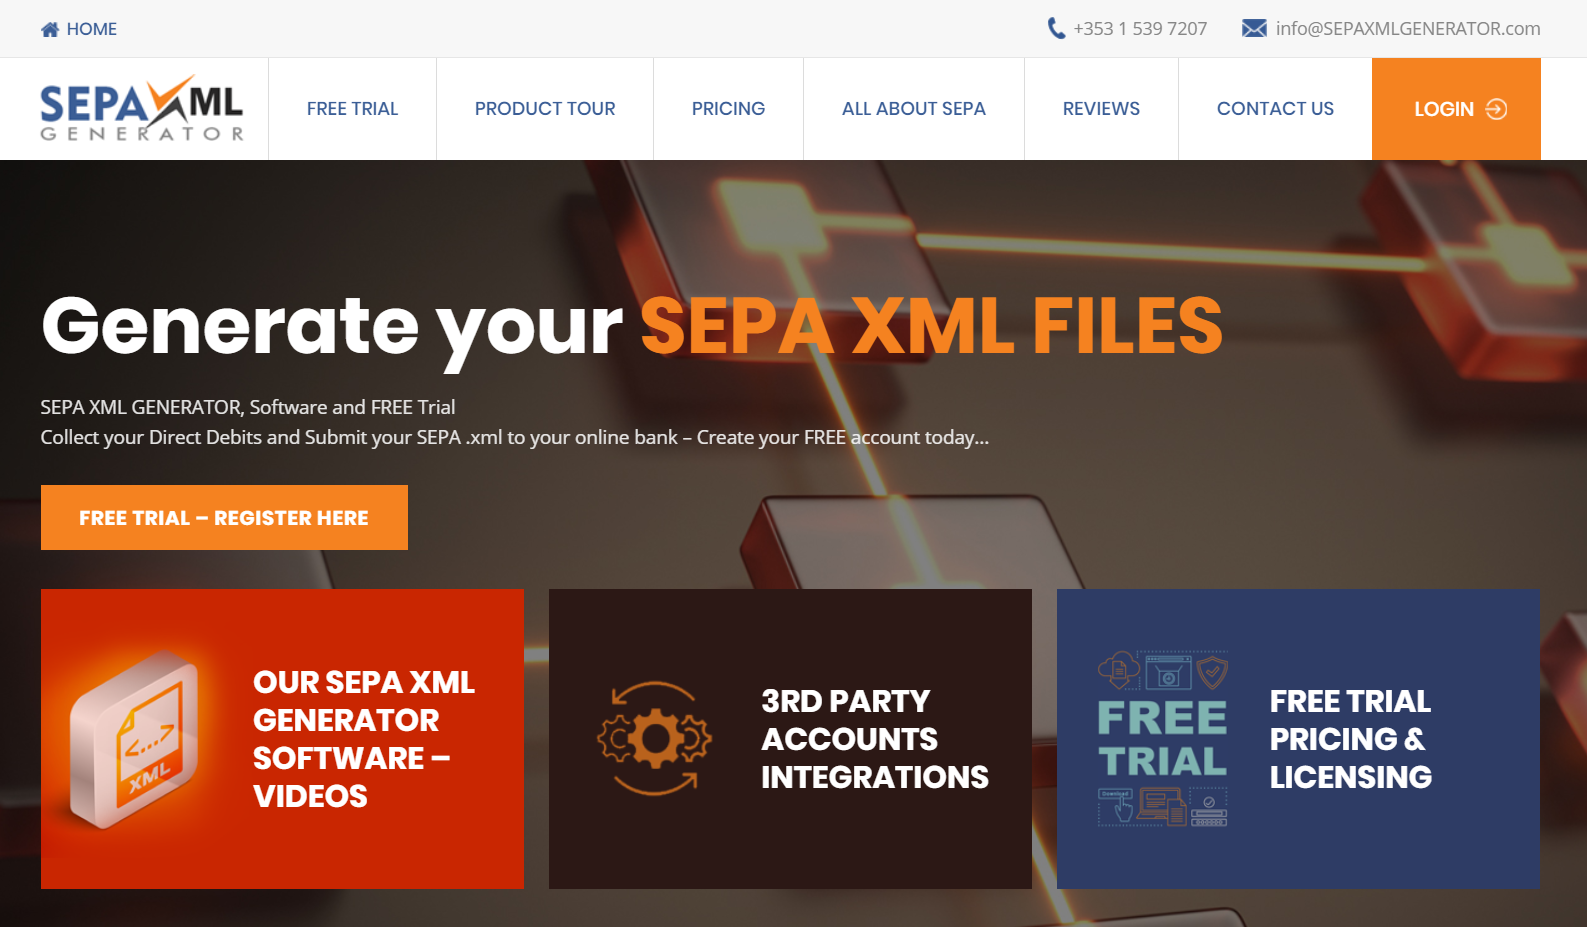 SEPA XML GENERATOR